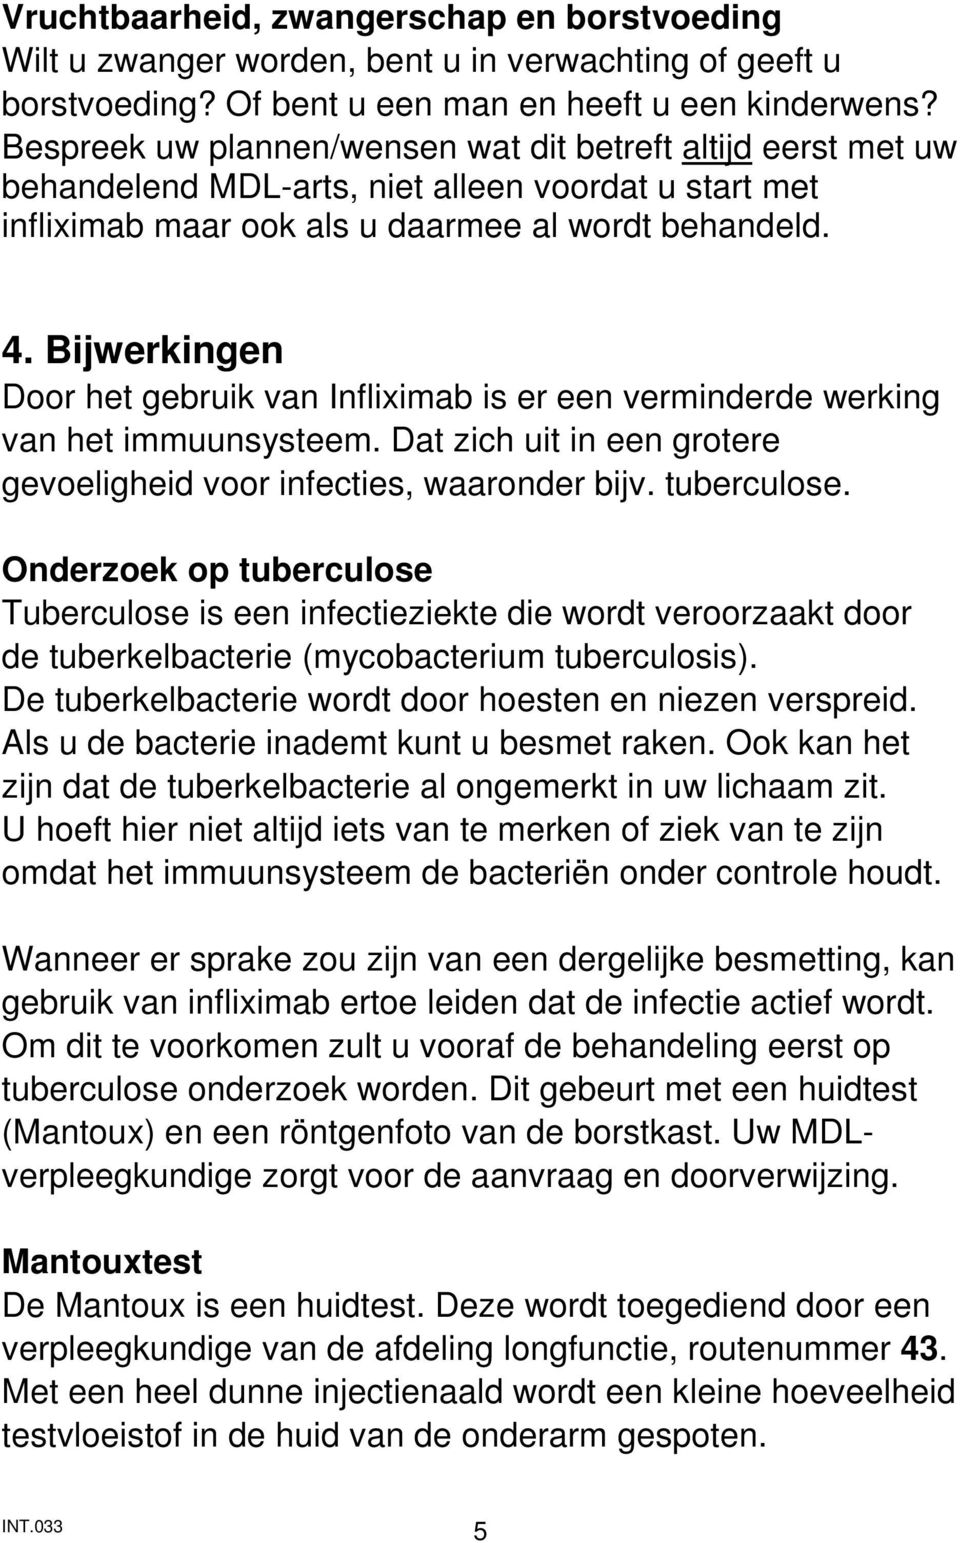 Bijwerkingen Door het gebruik van Infliximab is er een verminderde werking van het immuunsysteem. Dat zich uit in een grotere gevoeligheid voor infecties, waaronder bijv. tuberculose.